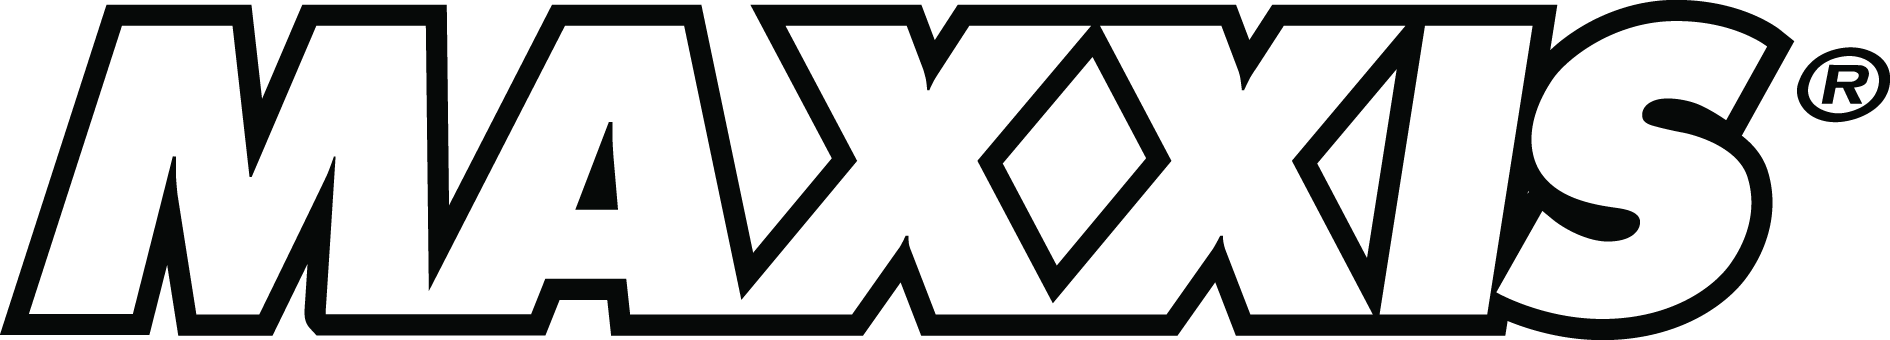 Logos | Maxxis Tires USA